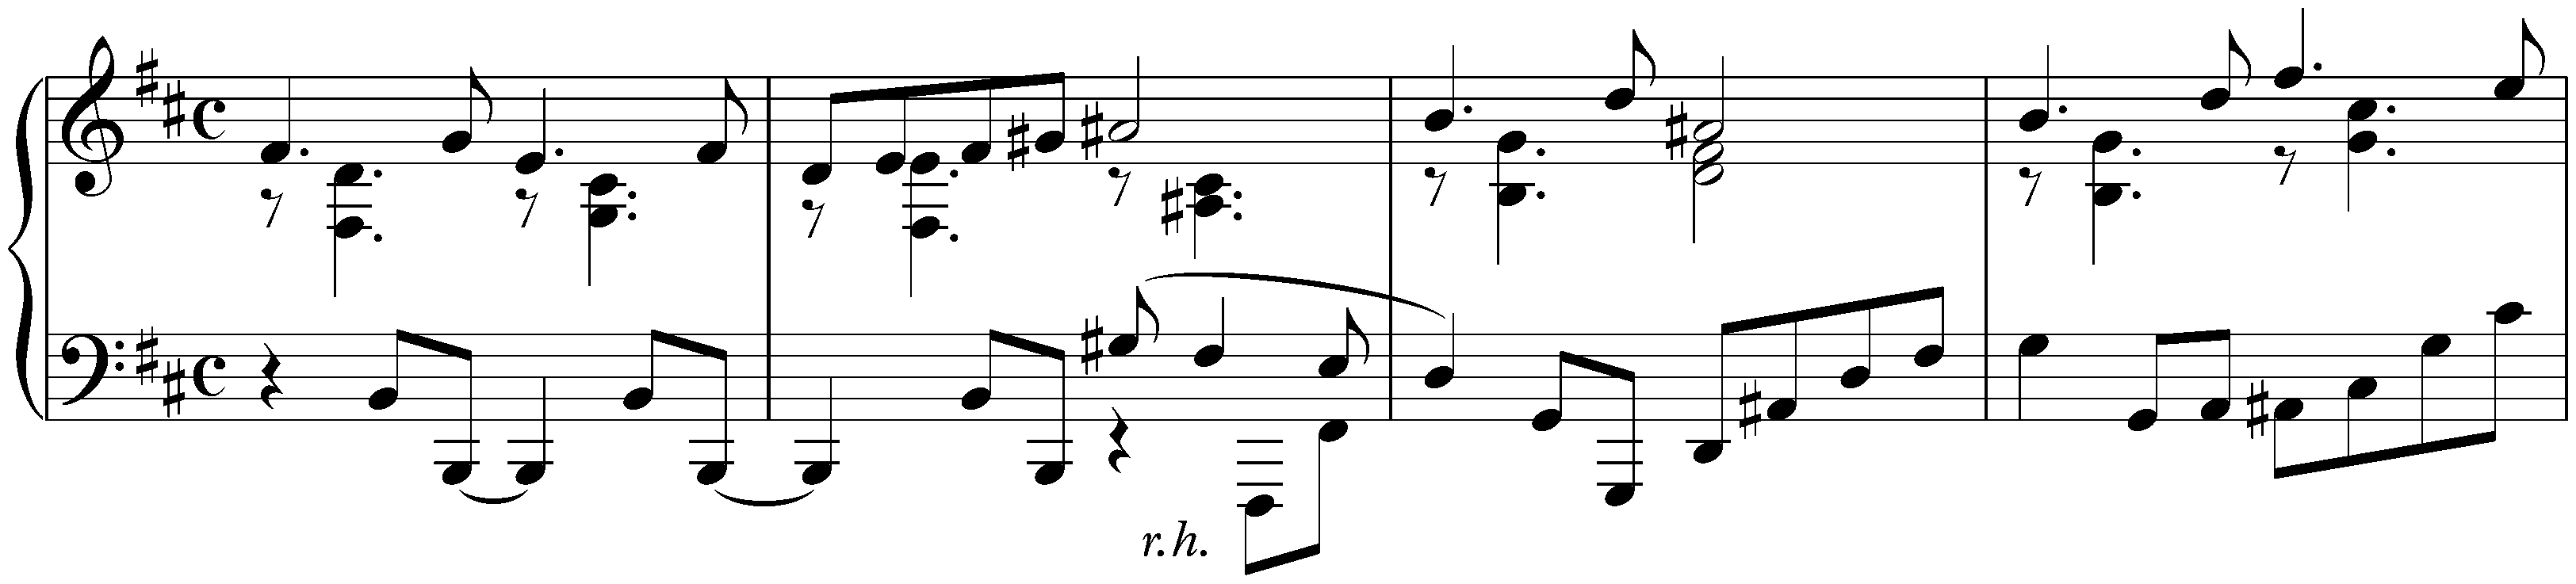 Kurze Stücke; 19. B minor